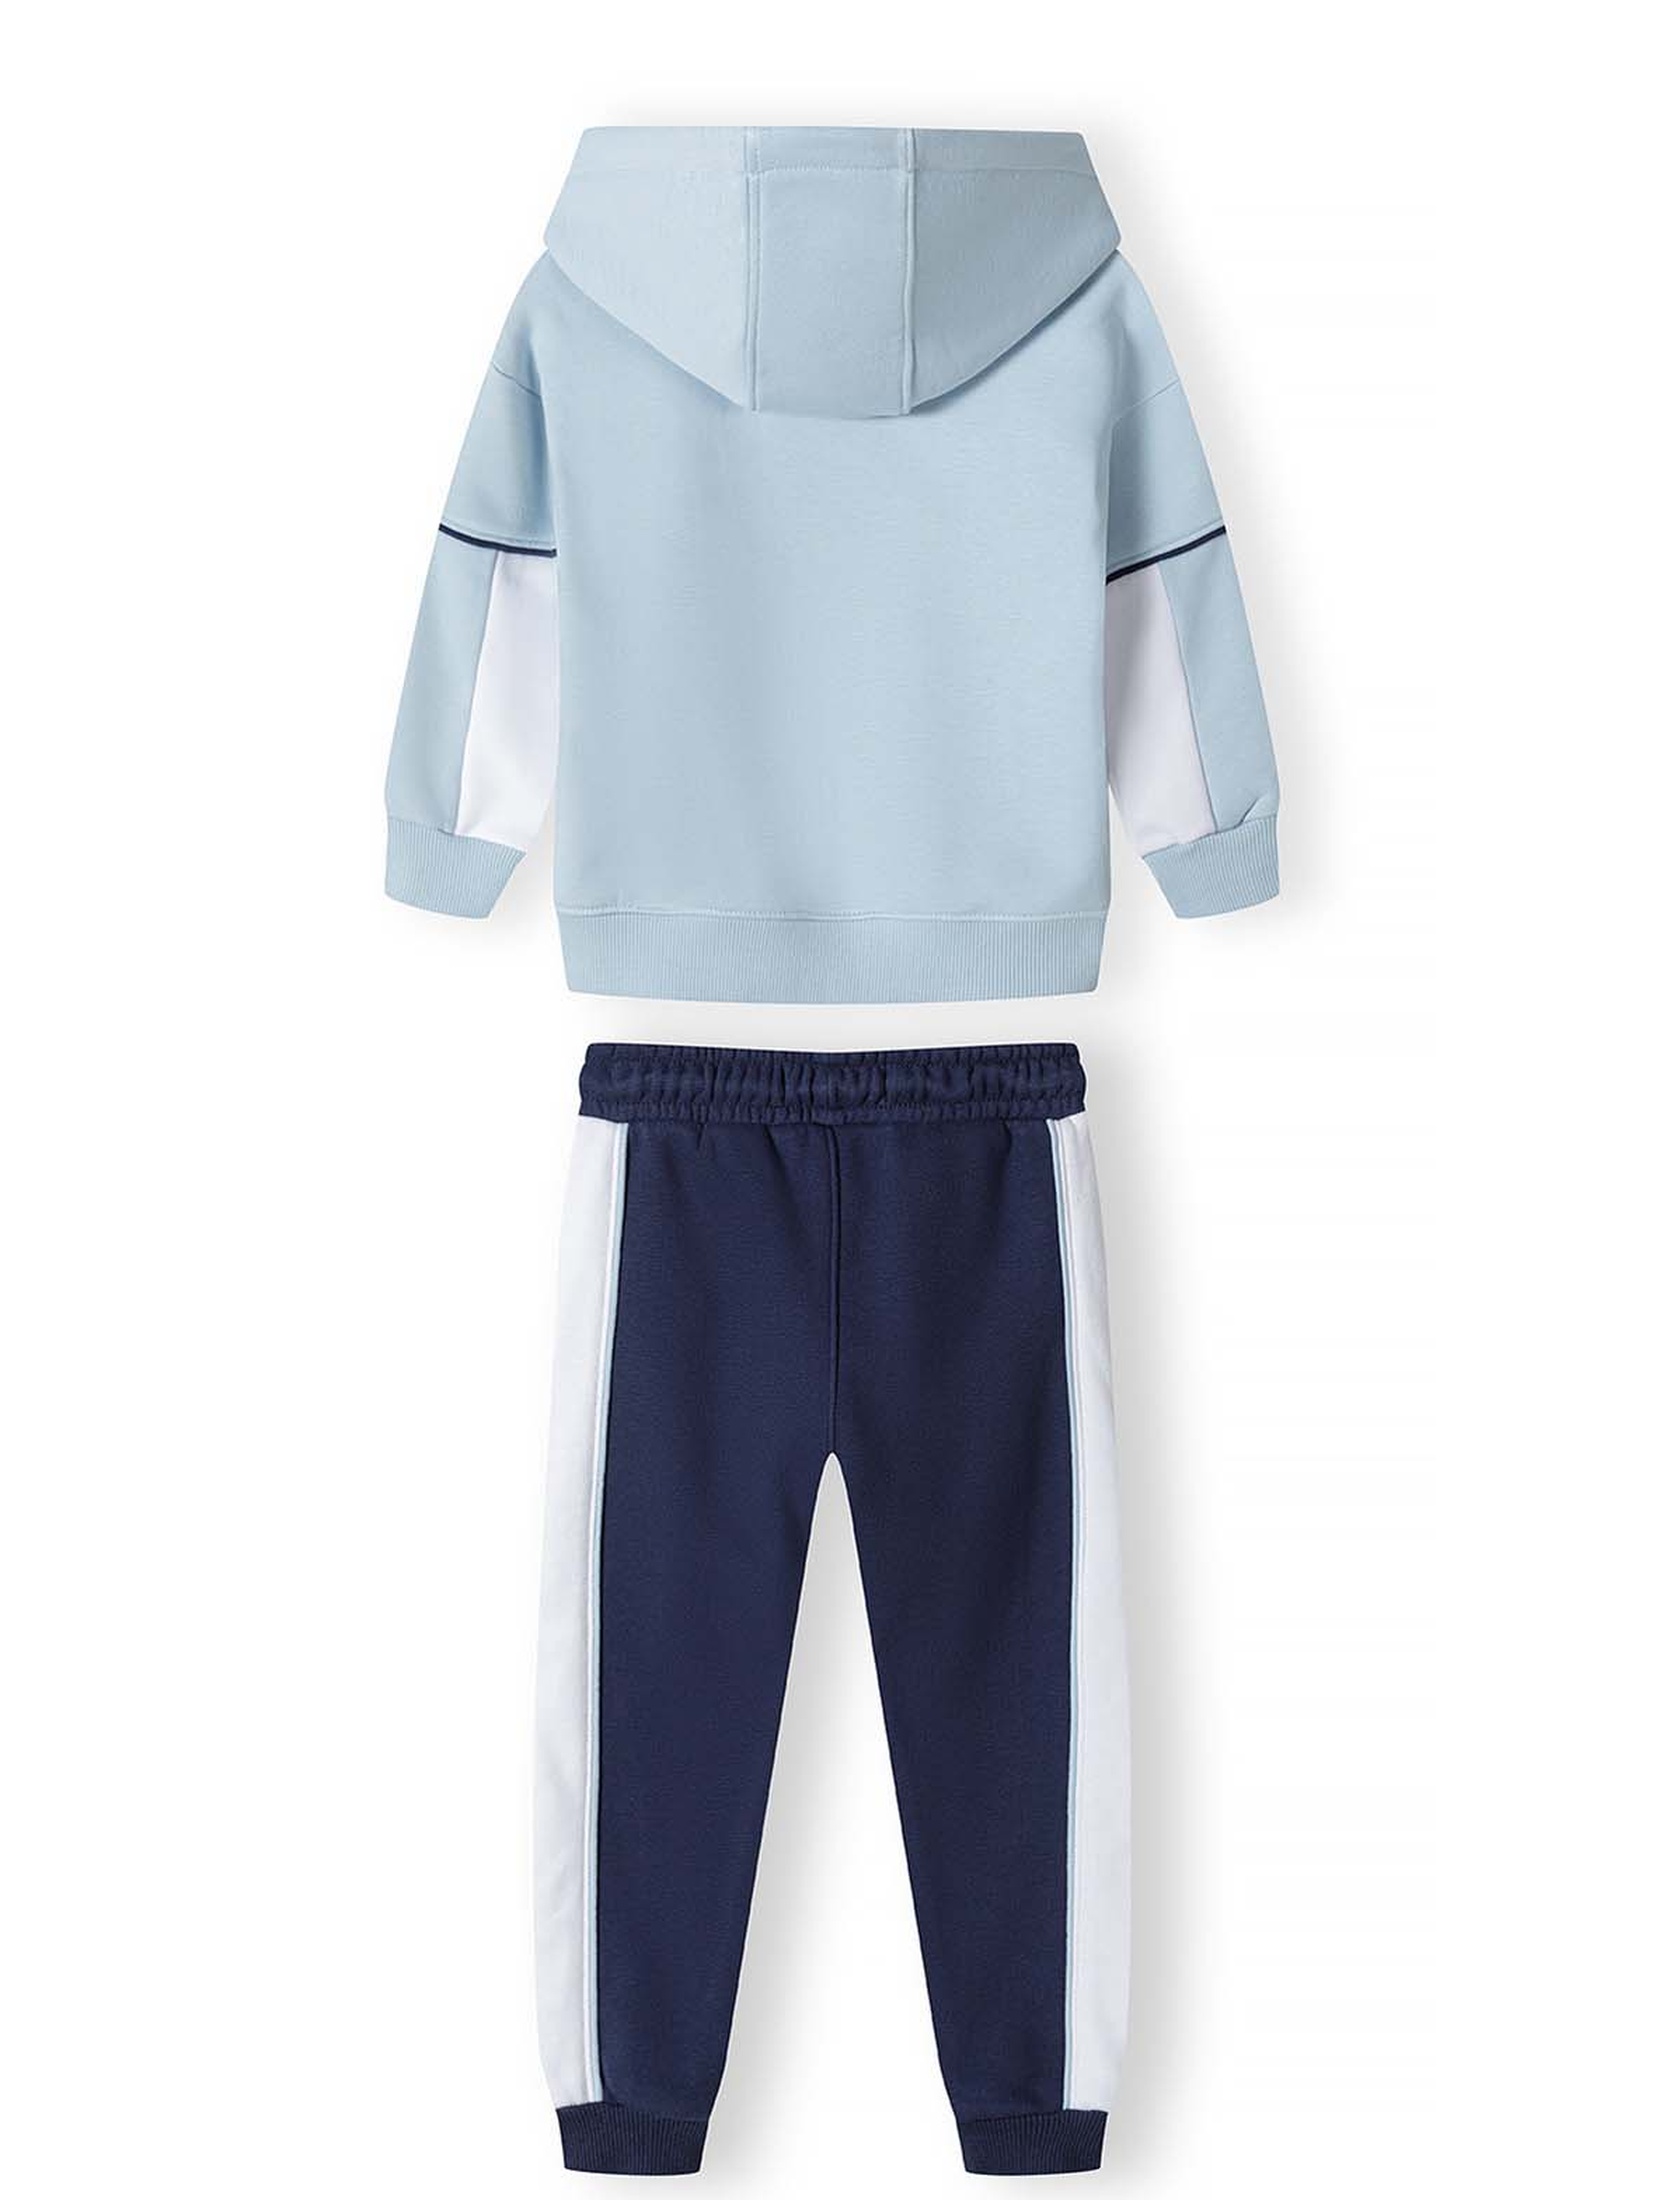 Komplet dresowy dla chłopca- błękitna bluza i spodnie dresowe